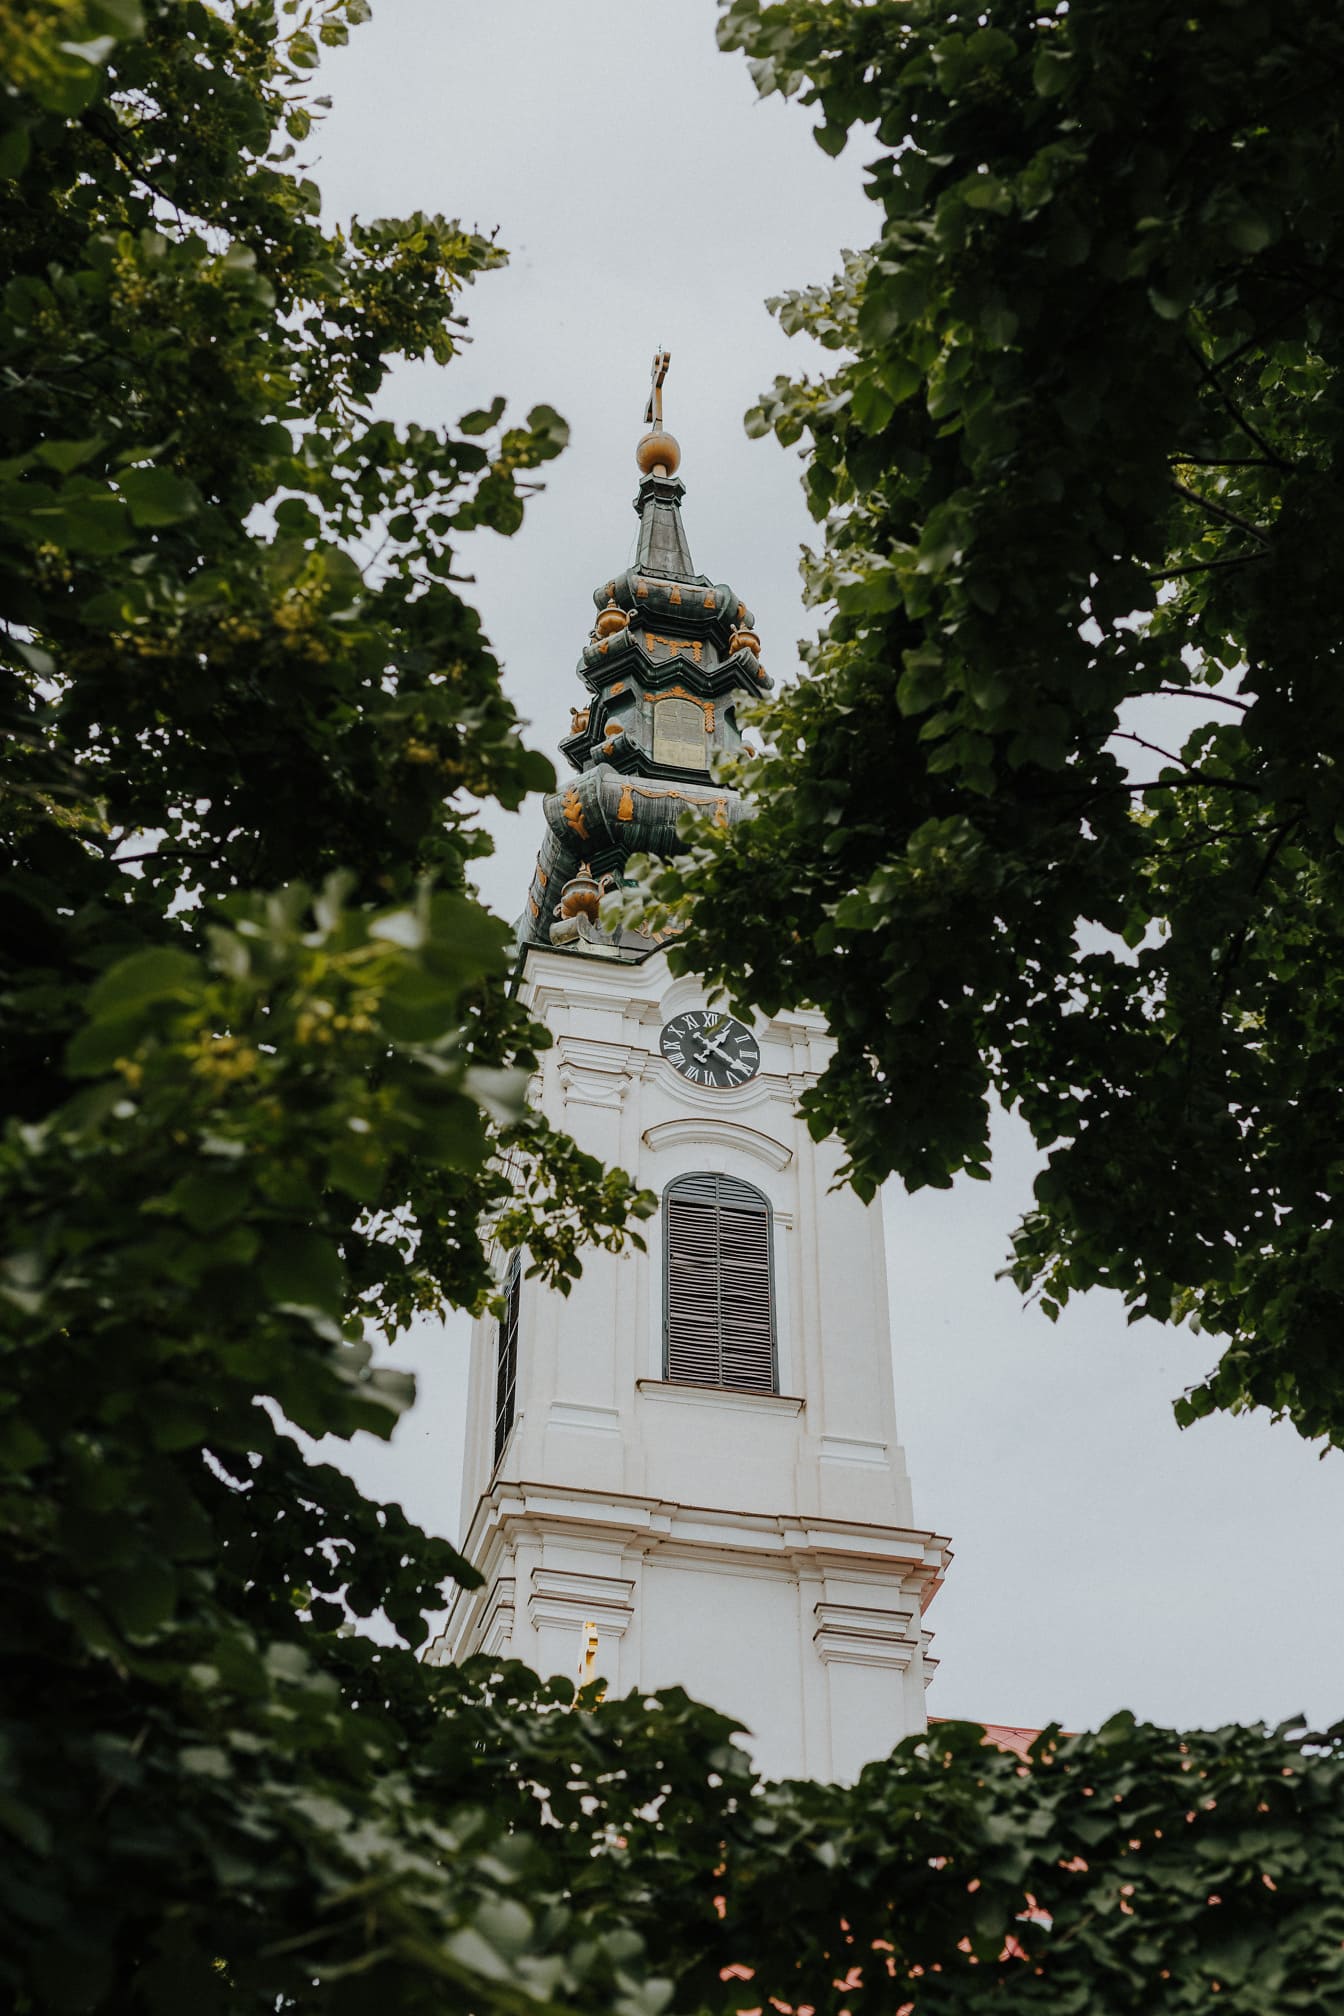 Tháp nhà thờ chính thống màu trắng giữa những tán cây